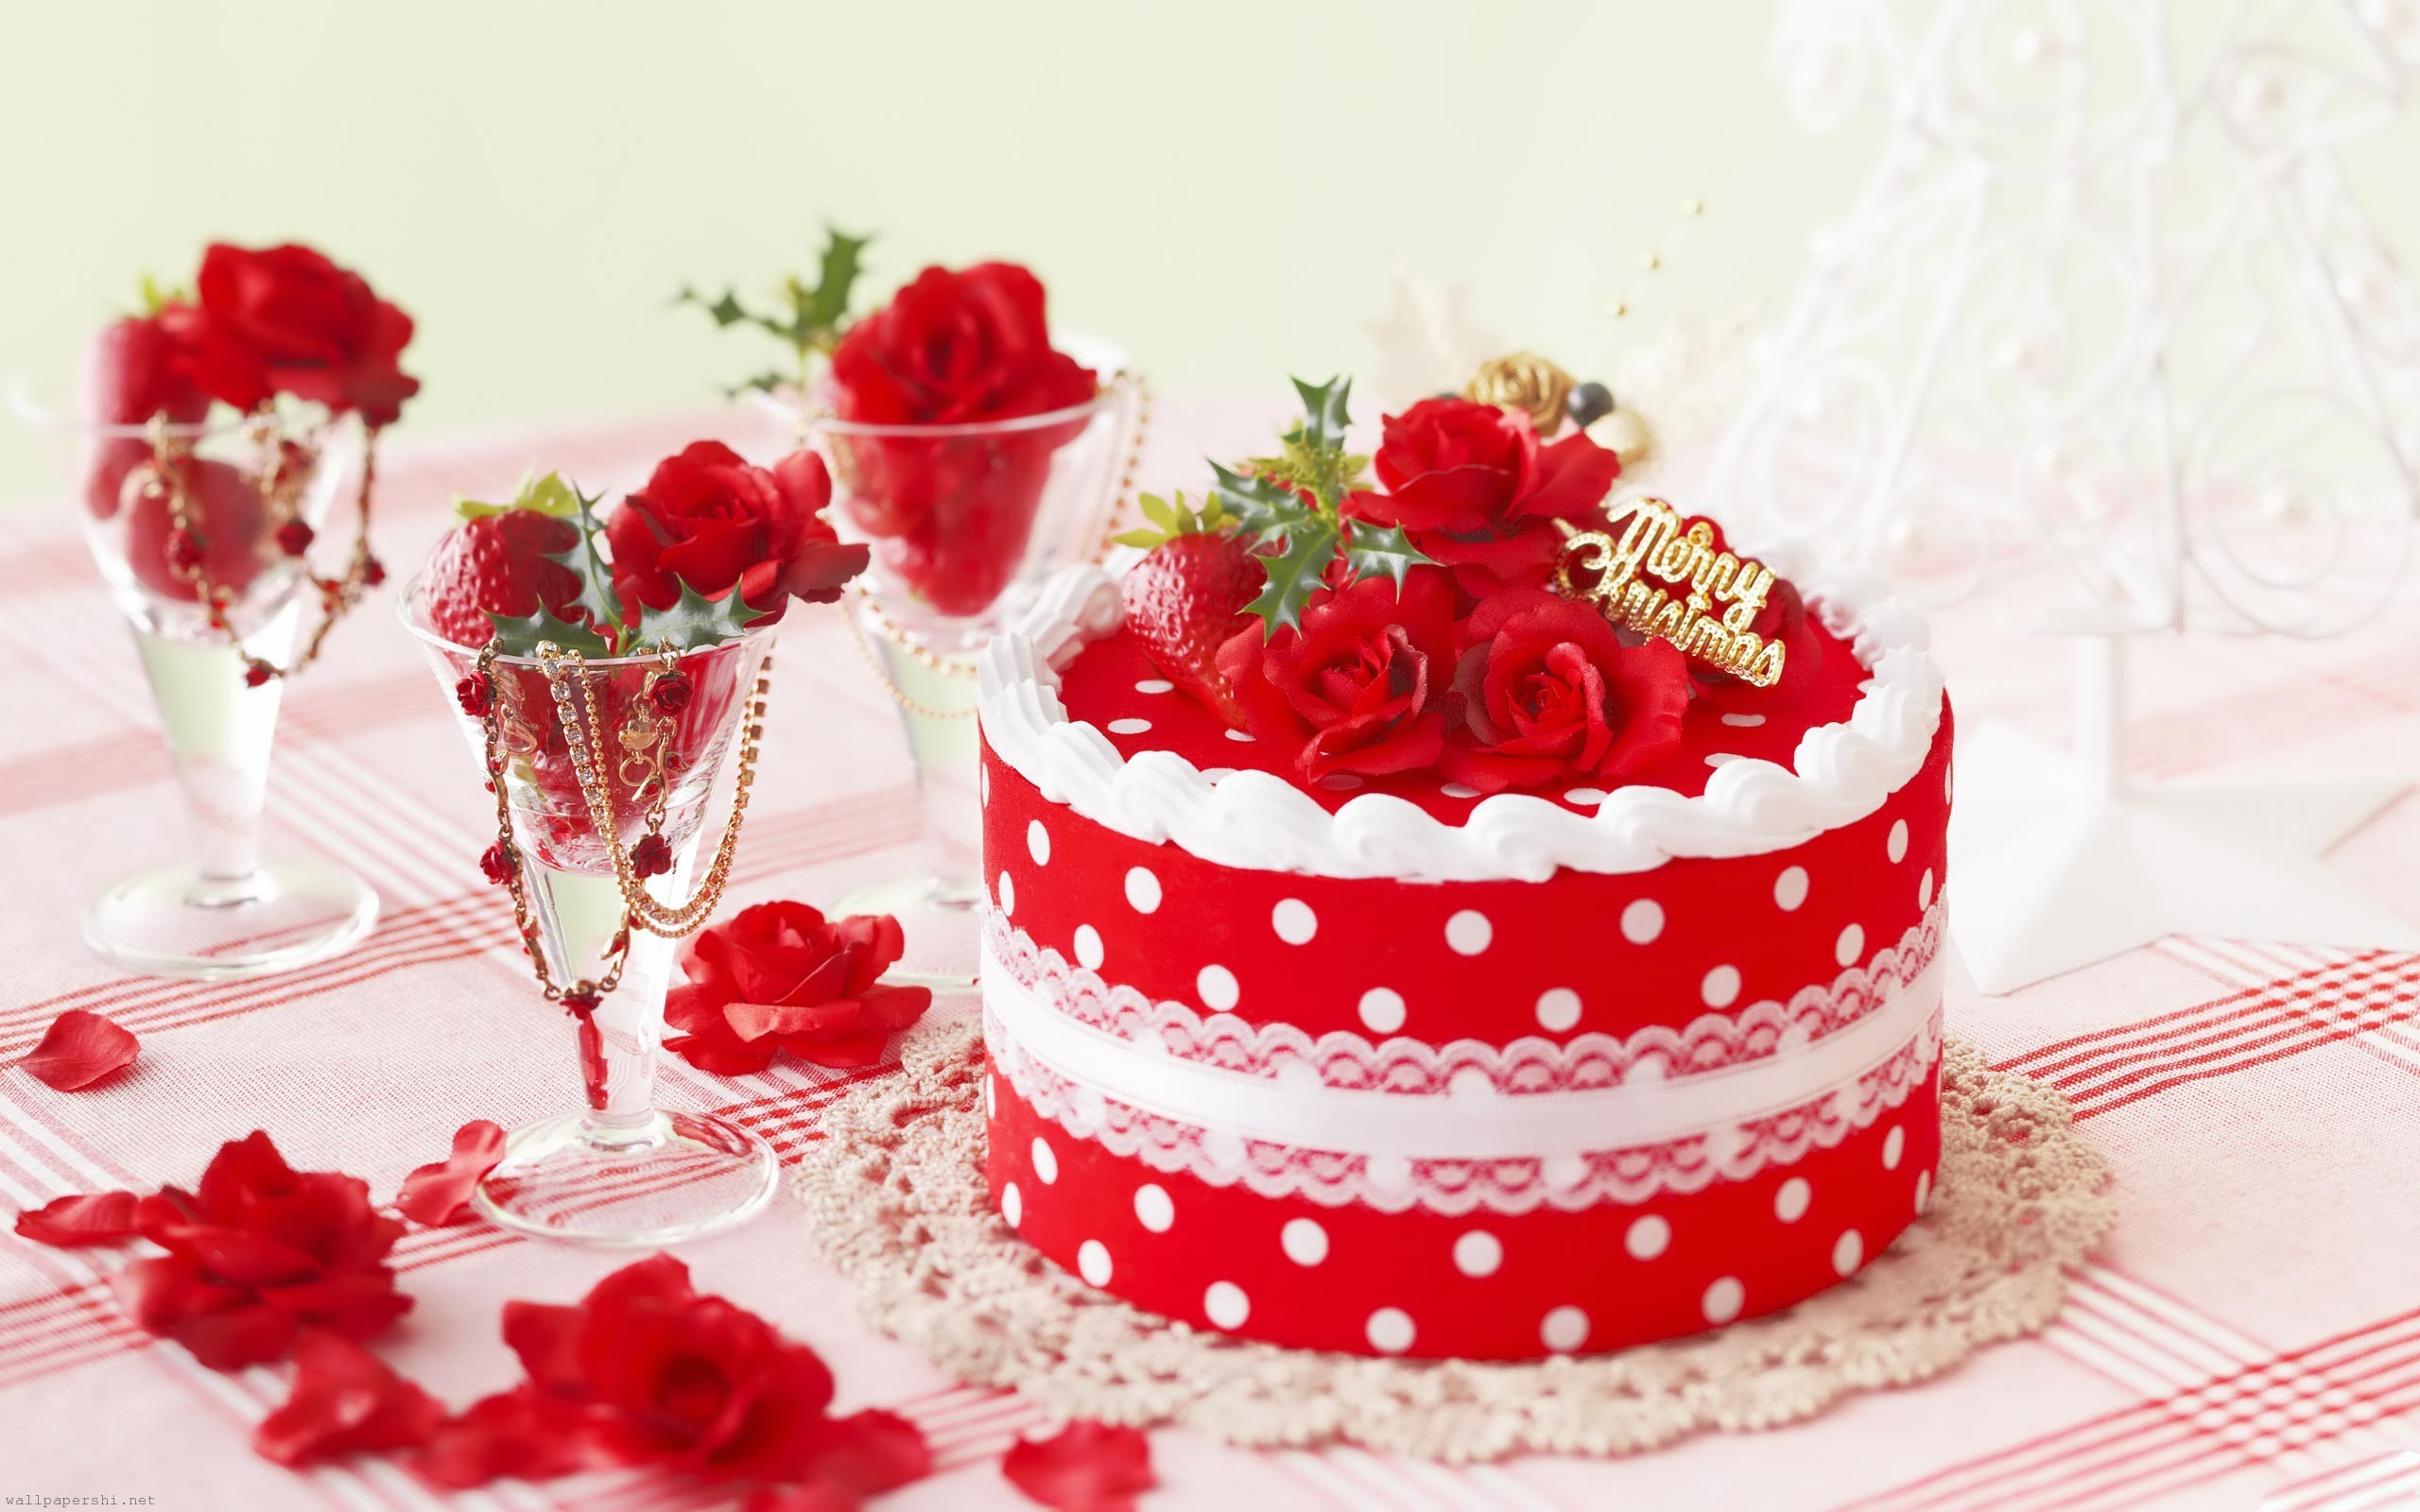 2560x1600 Cake With Roses Desktop Background HD Desktop Wallpaper, Background Image